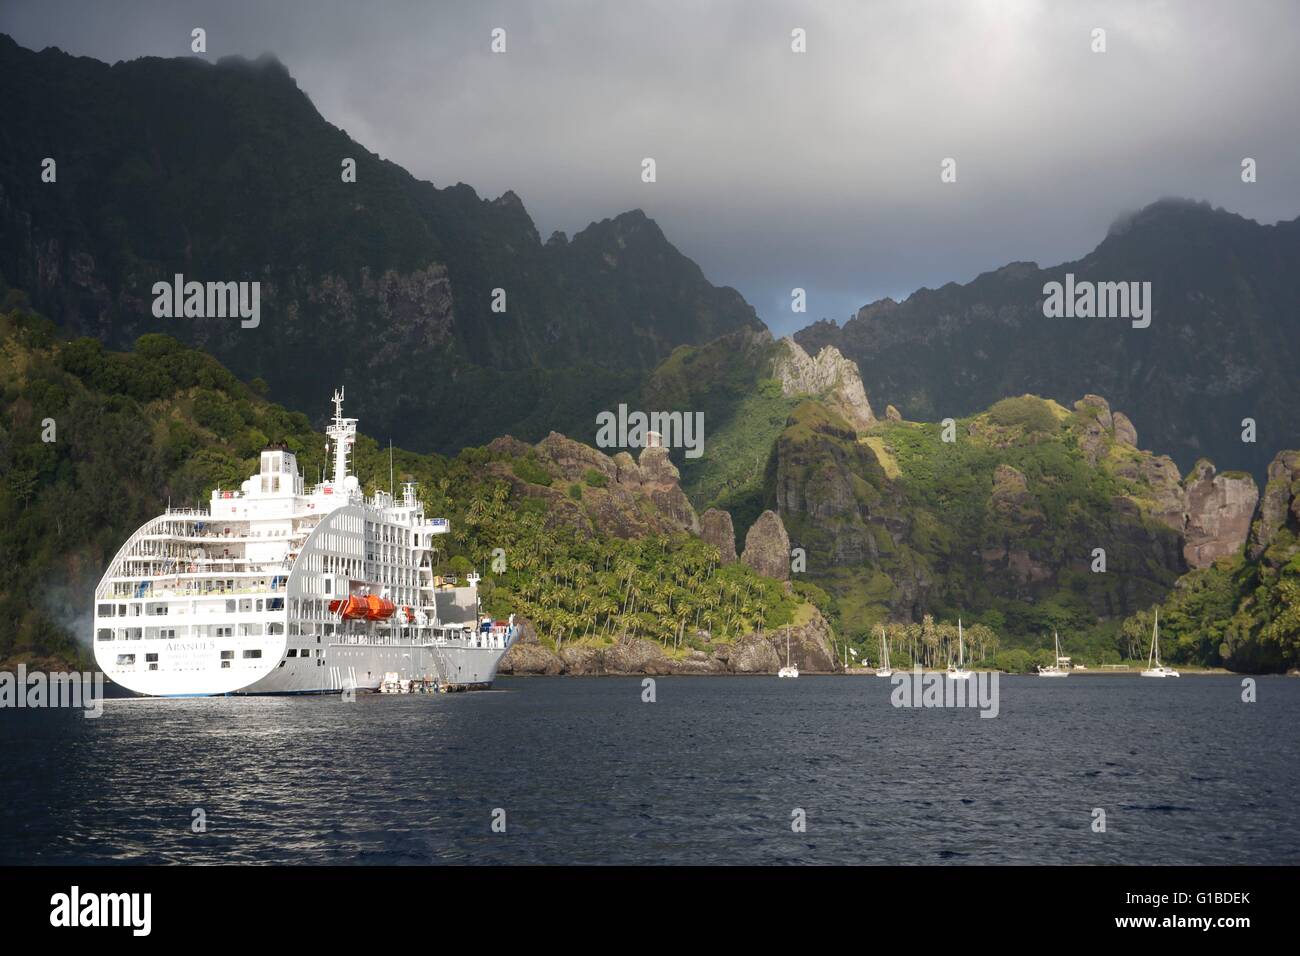 Frankreich, Französisch-Polynesien, Marquesas-Inseln Archipel, Aranui 5 Frachter und Passagier Schiff Kreuzfahrt Stockfoto